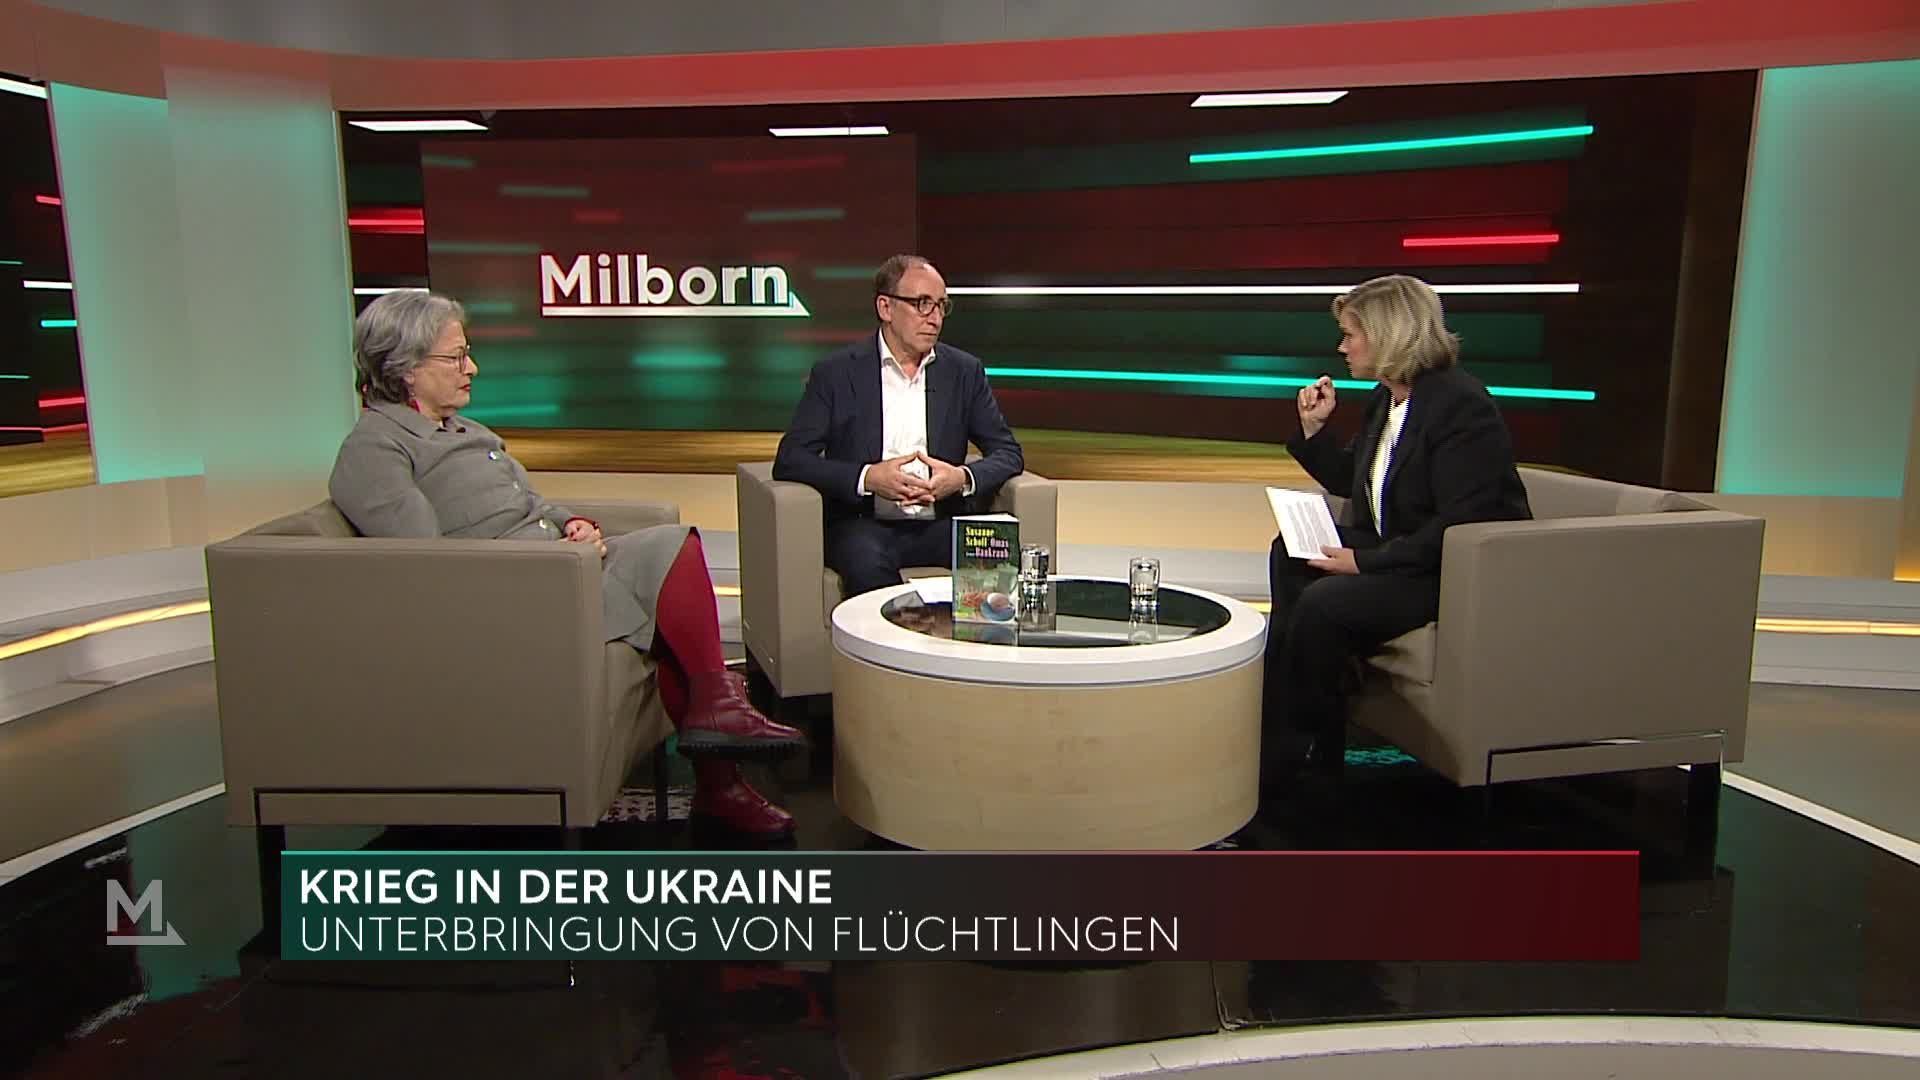 Johannes Rauch und Susanne Scholl im Interview bei Milborn